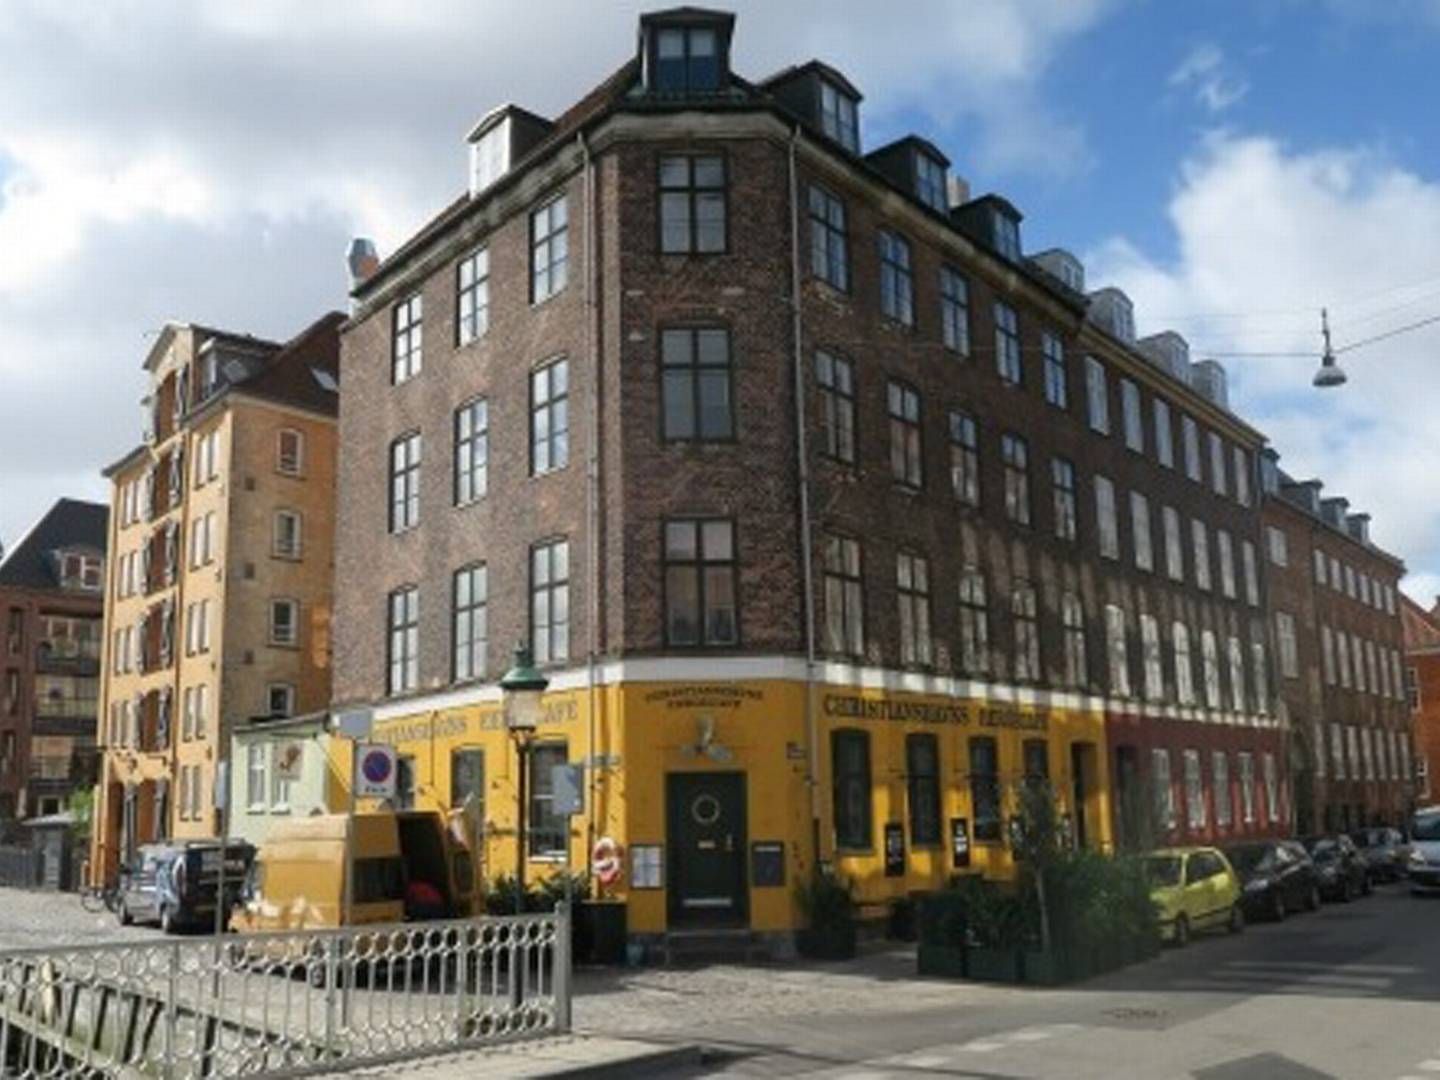 Ejendommen Standgade 50 i København er blandt de seneste opkøb til kapitalforvalteren Blackstone i Danmark. | Foto: PR